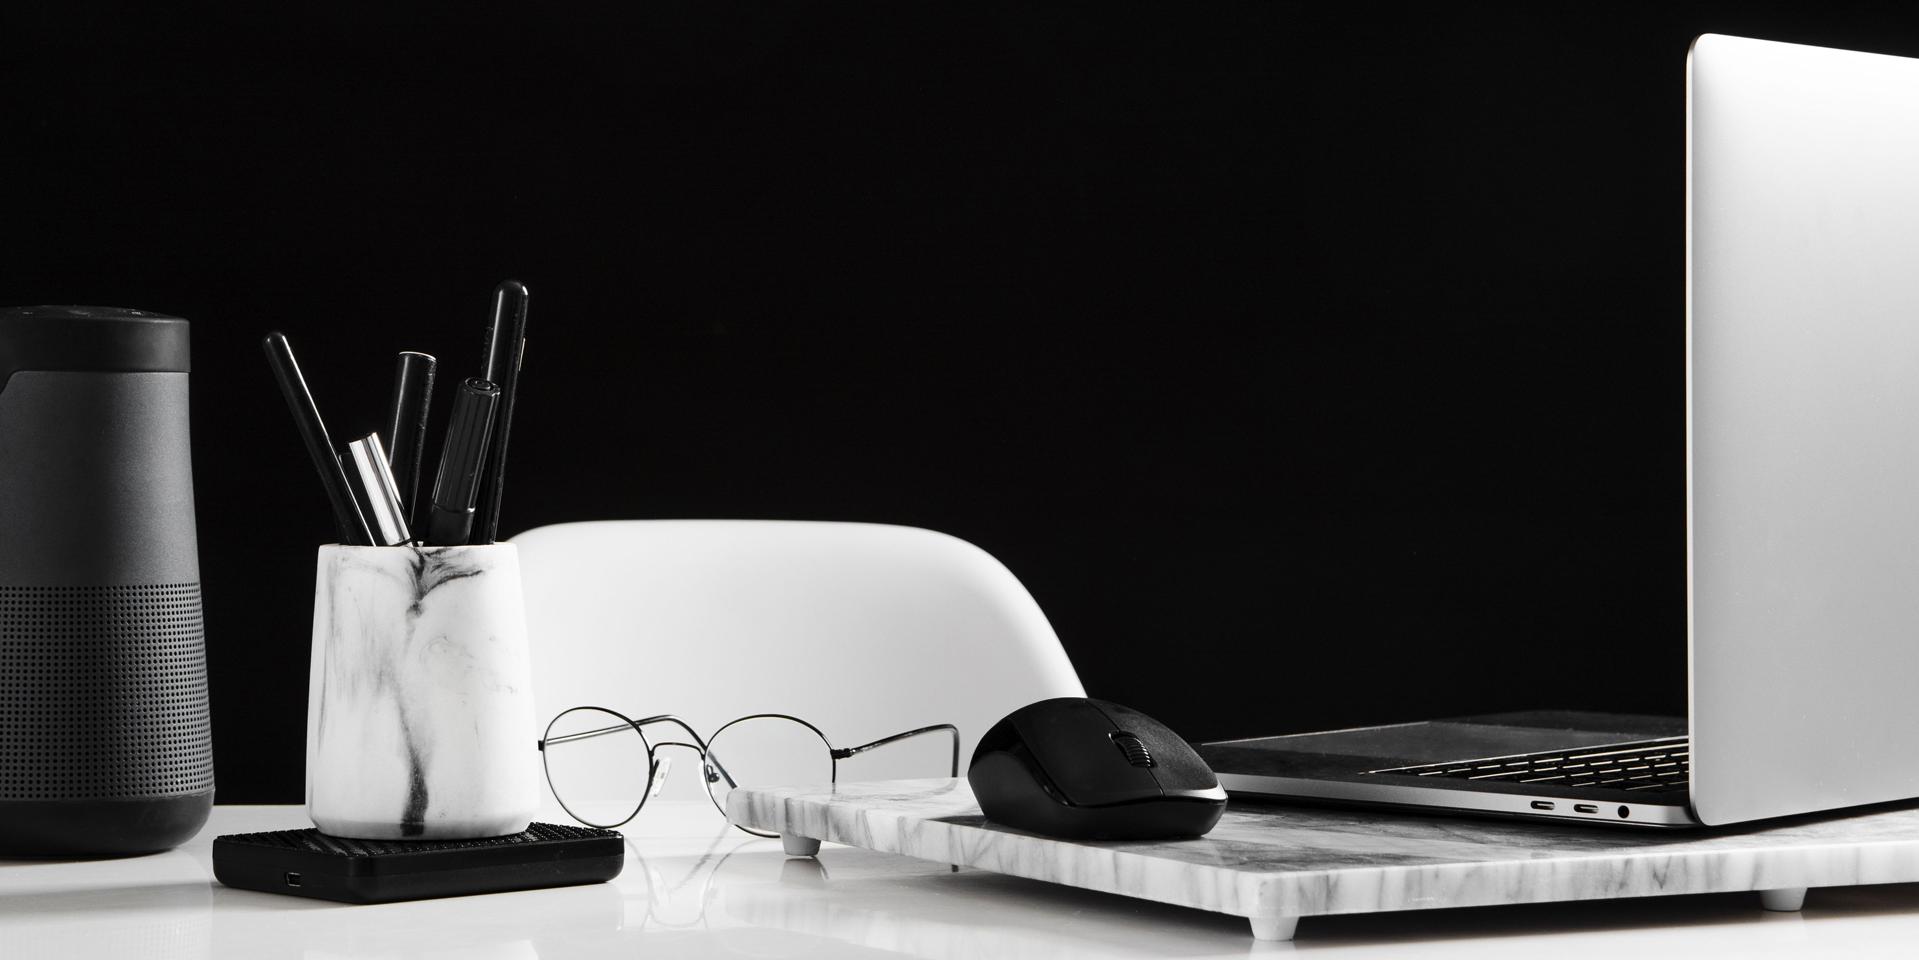 Poste de travail bien ordonné avec un ordinateur portable ouvert et une souris sur le côté droit. Une paire de lunettes est posée devant. Une boîte avec des stylos se trouve à gauche de l’image.